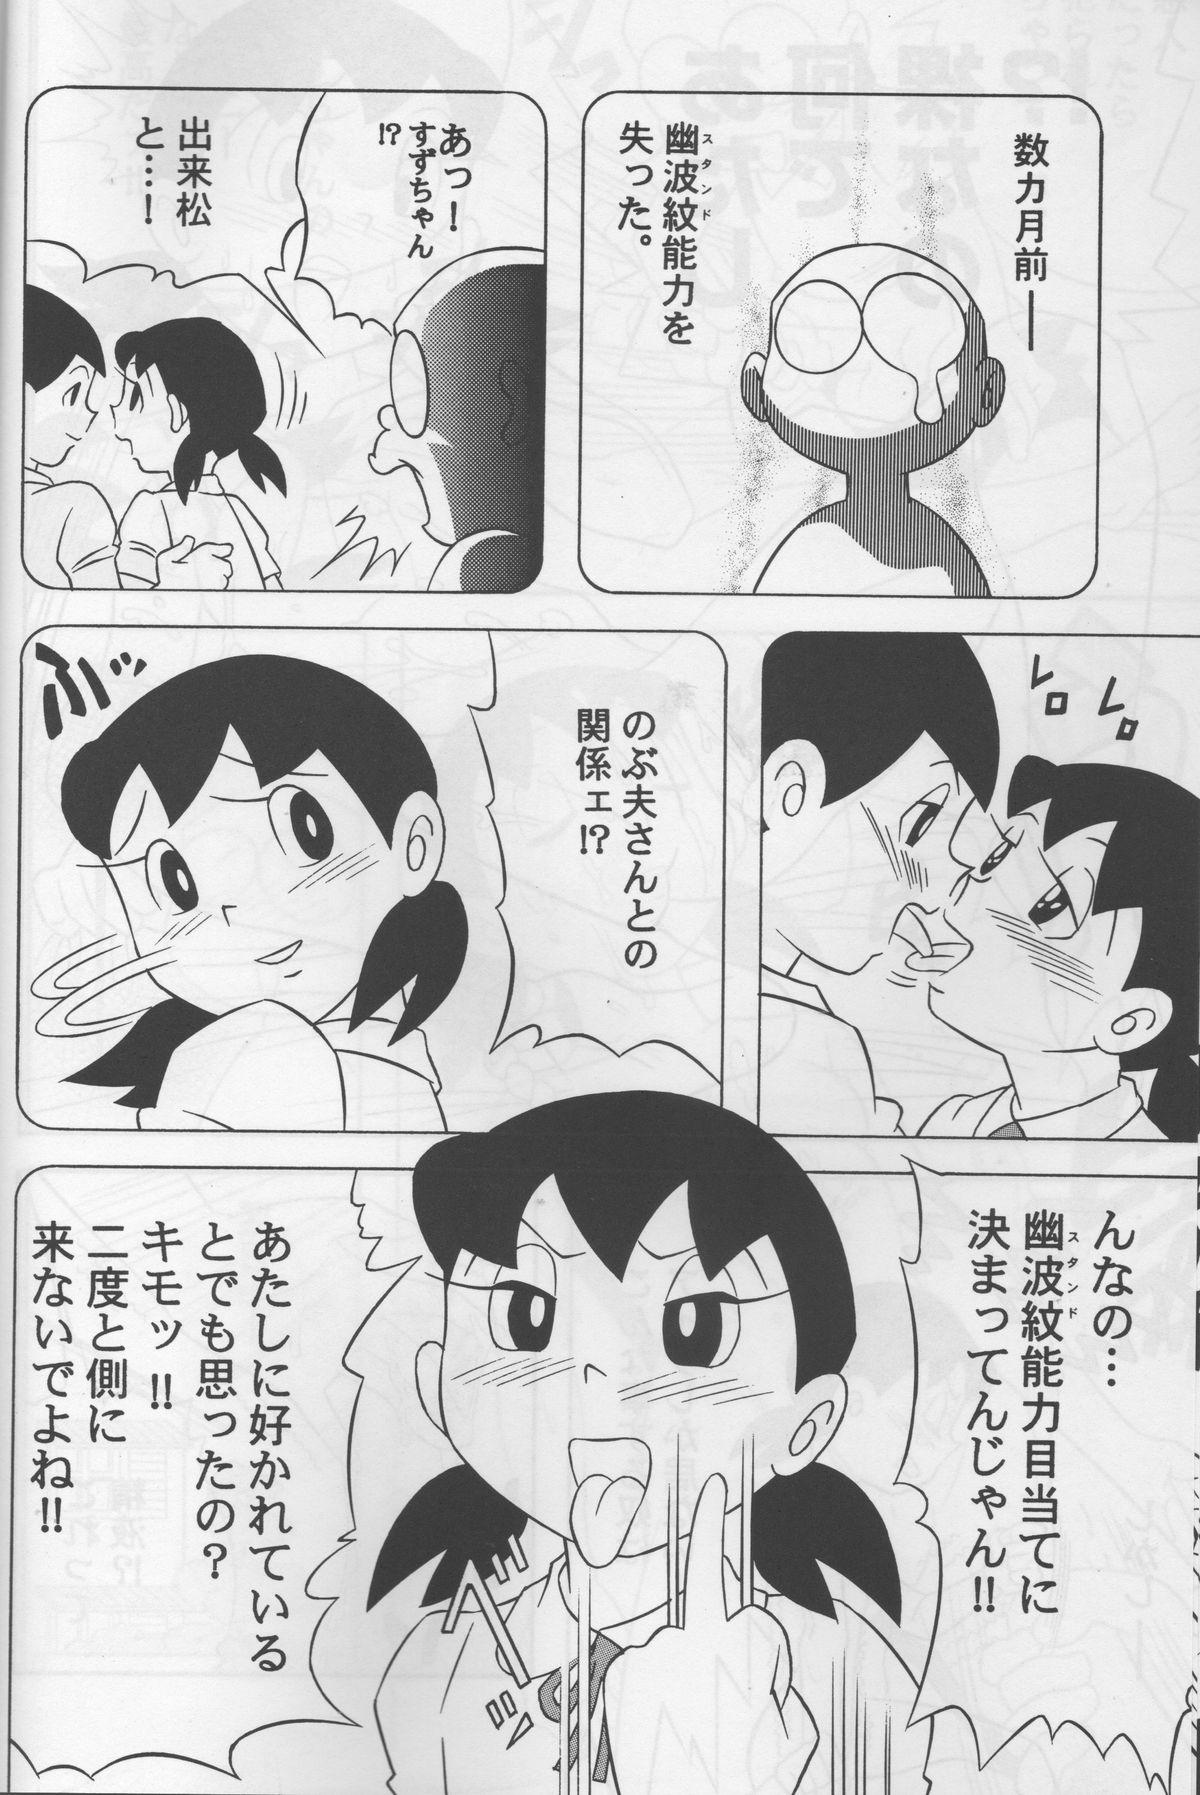 Spit Modokashii Sekai no Uede - Doraemon Job - Page 7